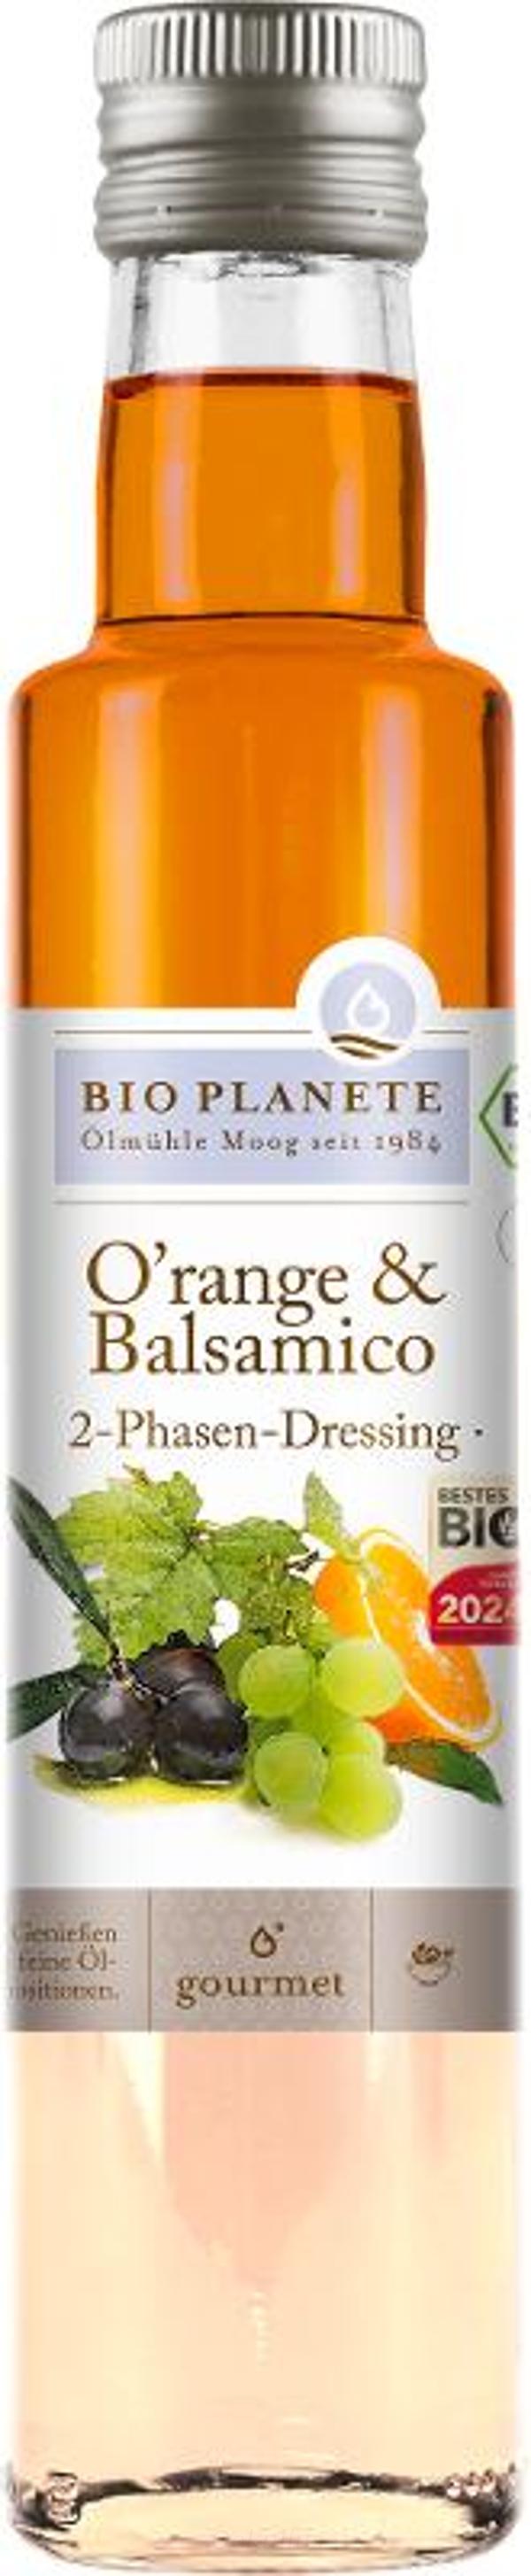 Produktfoto zu O'range und Balsamico Dressing